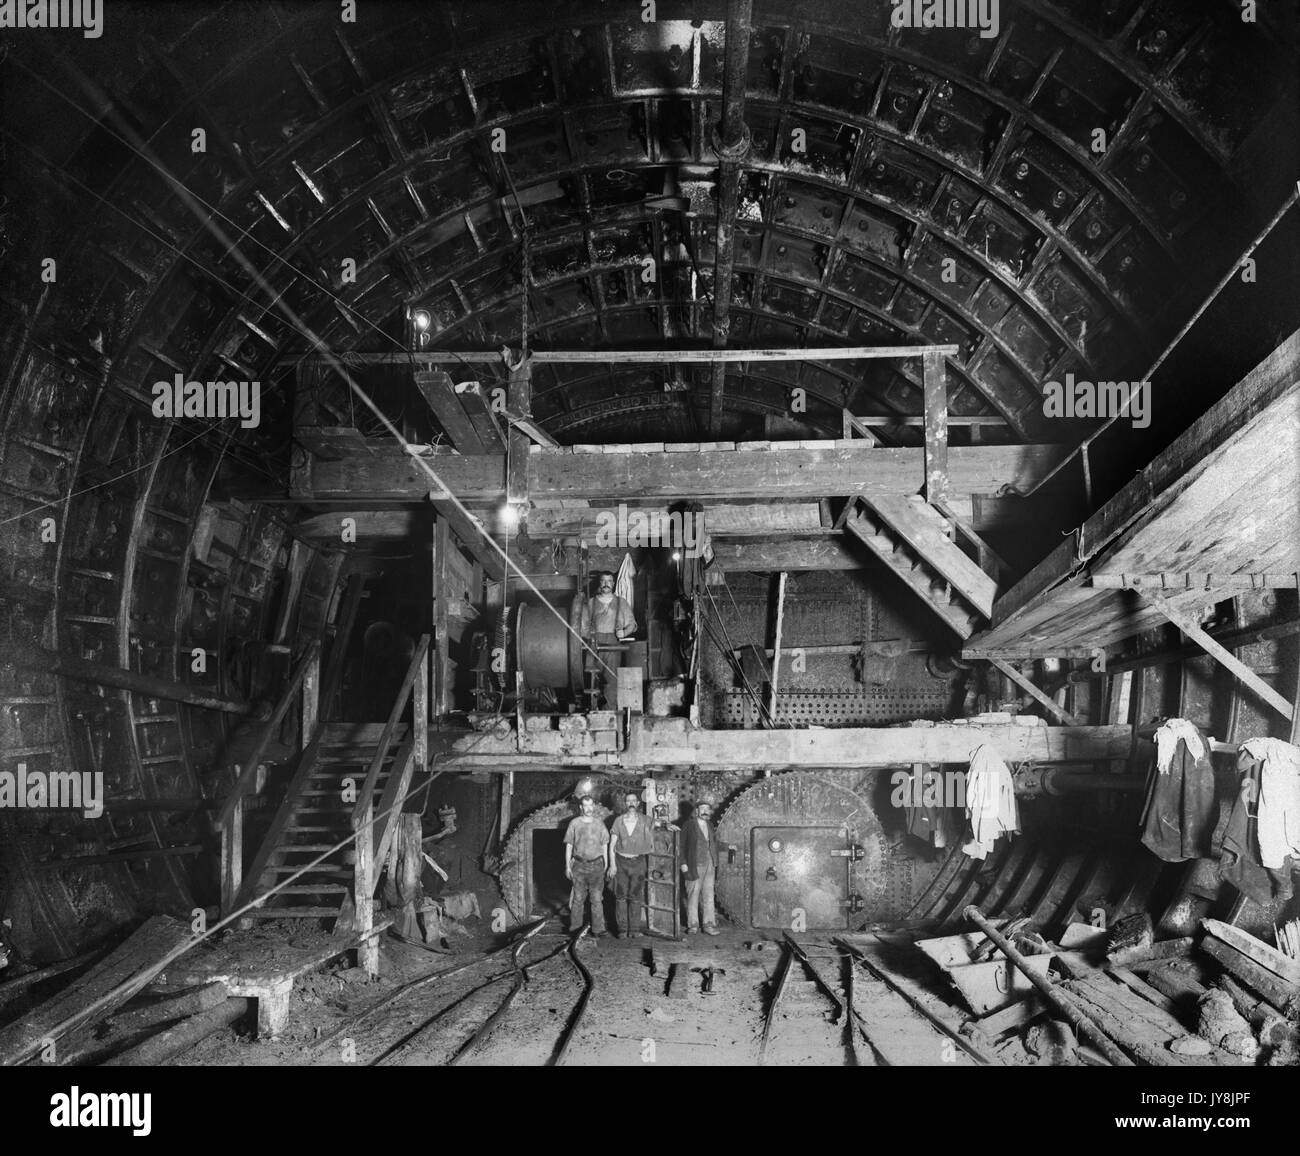 Túnel de Rotherhithe, Shadwell, Londres. Una vista del tablero desde el interior durante la construcción. Uno de una serie de fotos que documentan los trabajos en la carretera túnel bajo el río Támesis (1904-08), ésta tomada en 1906. Foto de stock